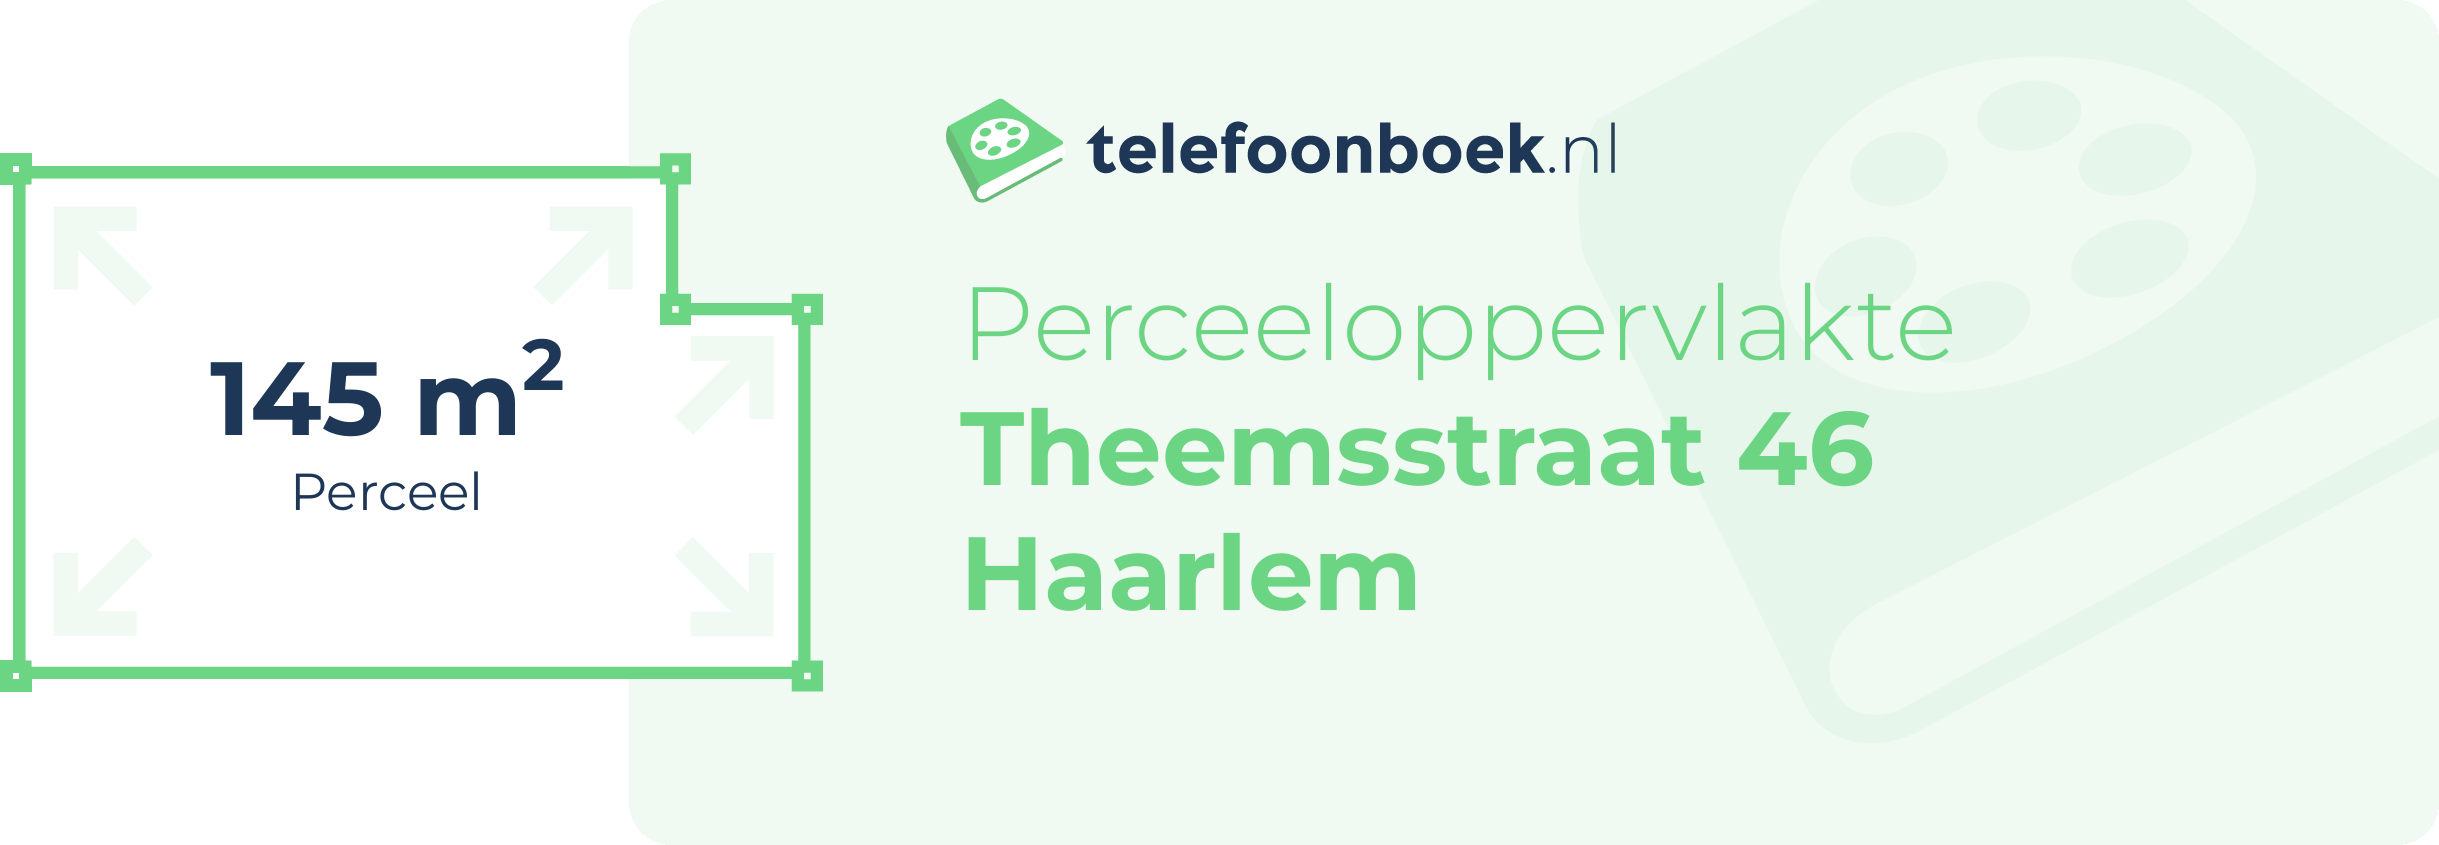 Perceeloppervlakte Theemsstraat 46 Haarlem